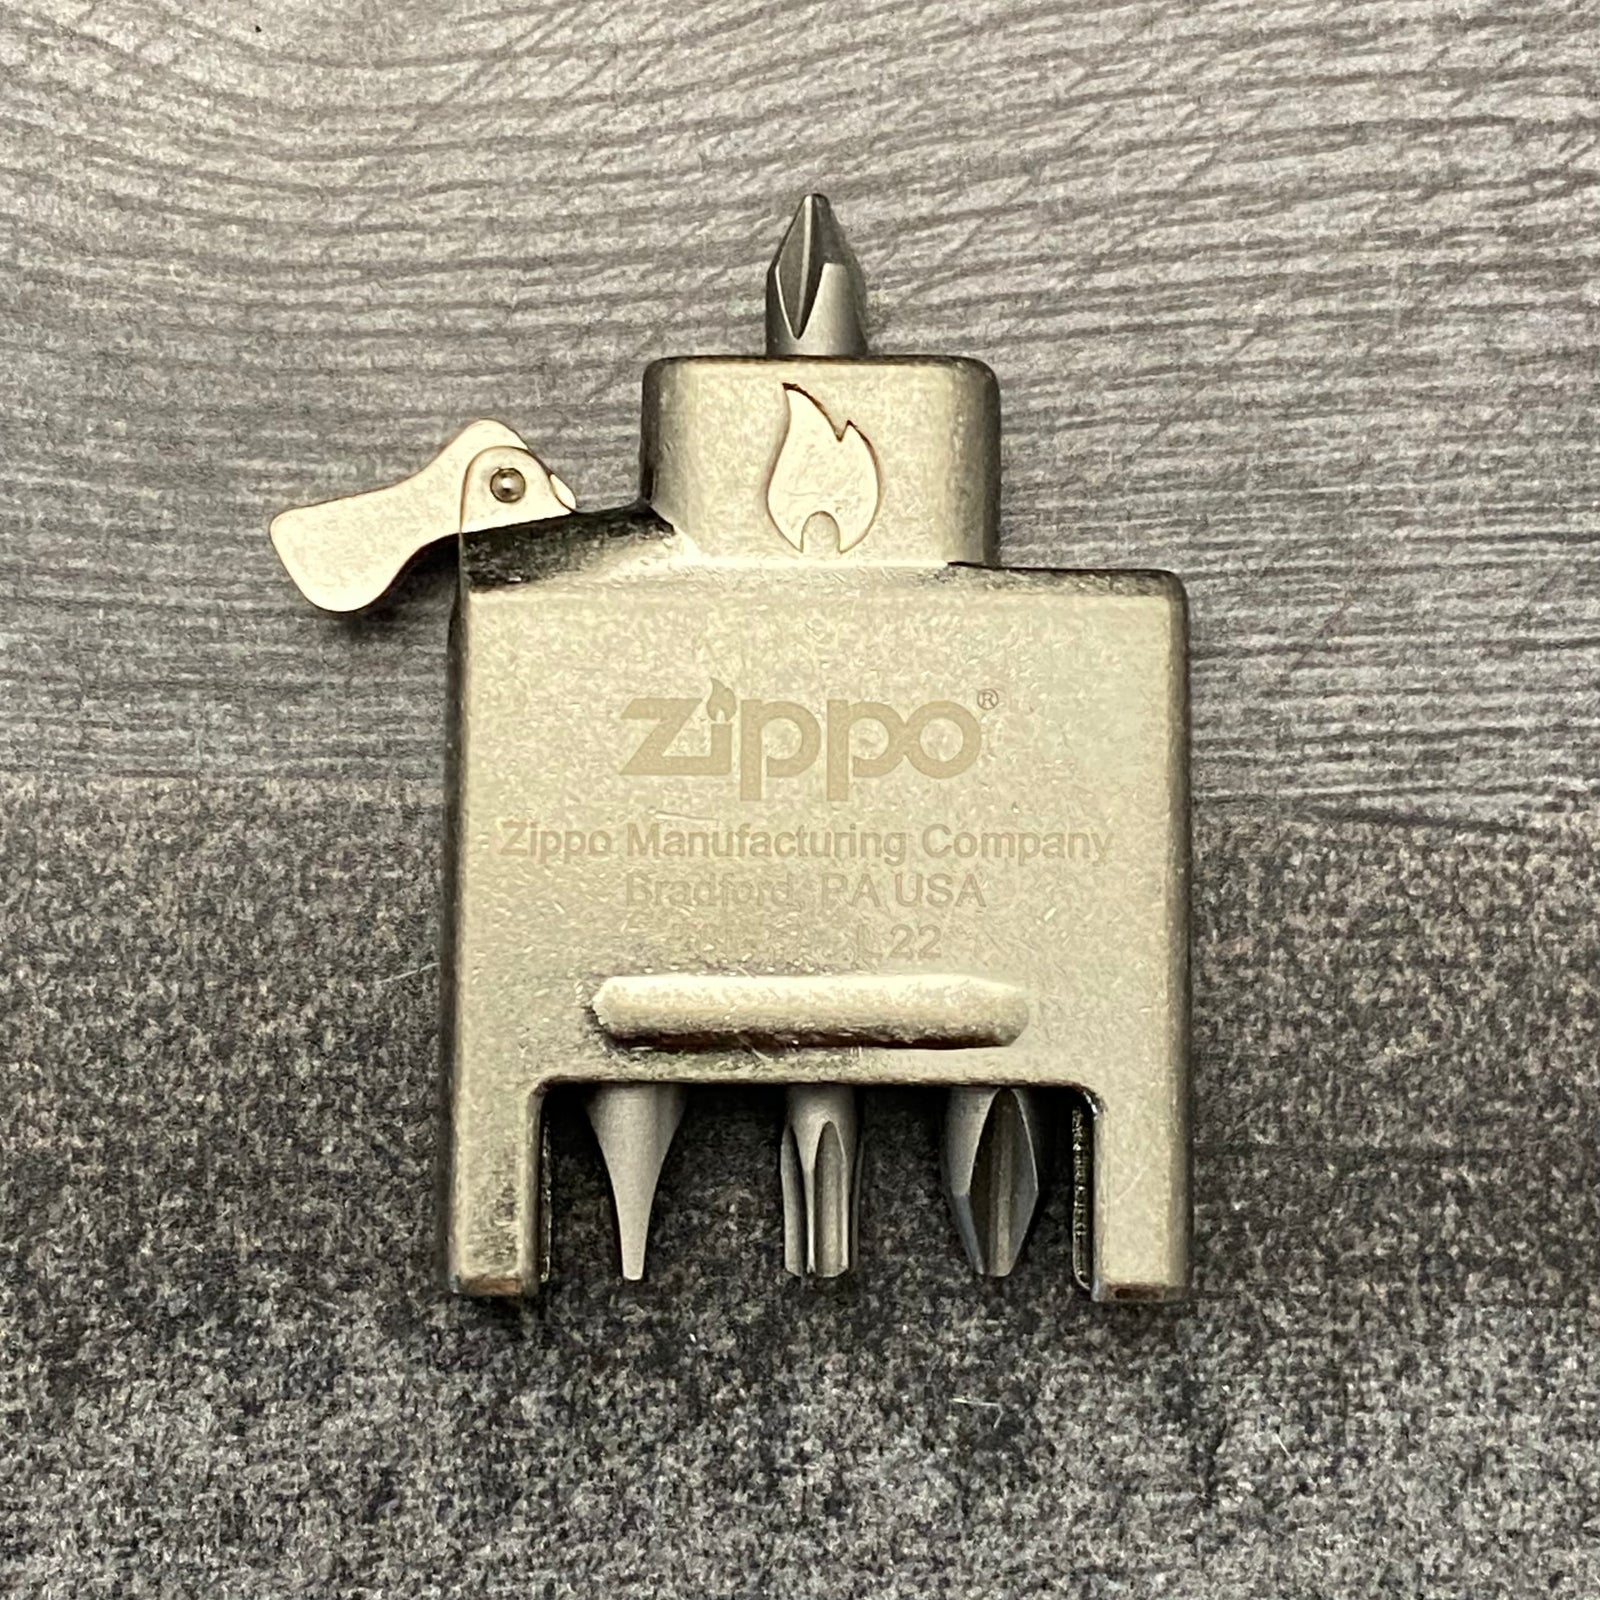 Zippo Lighter Case Insert - Bit Safe